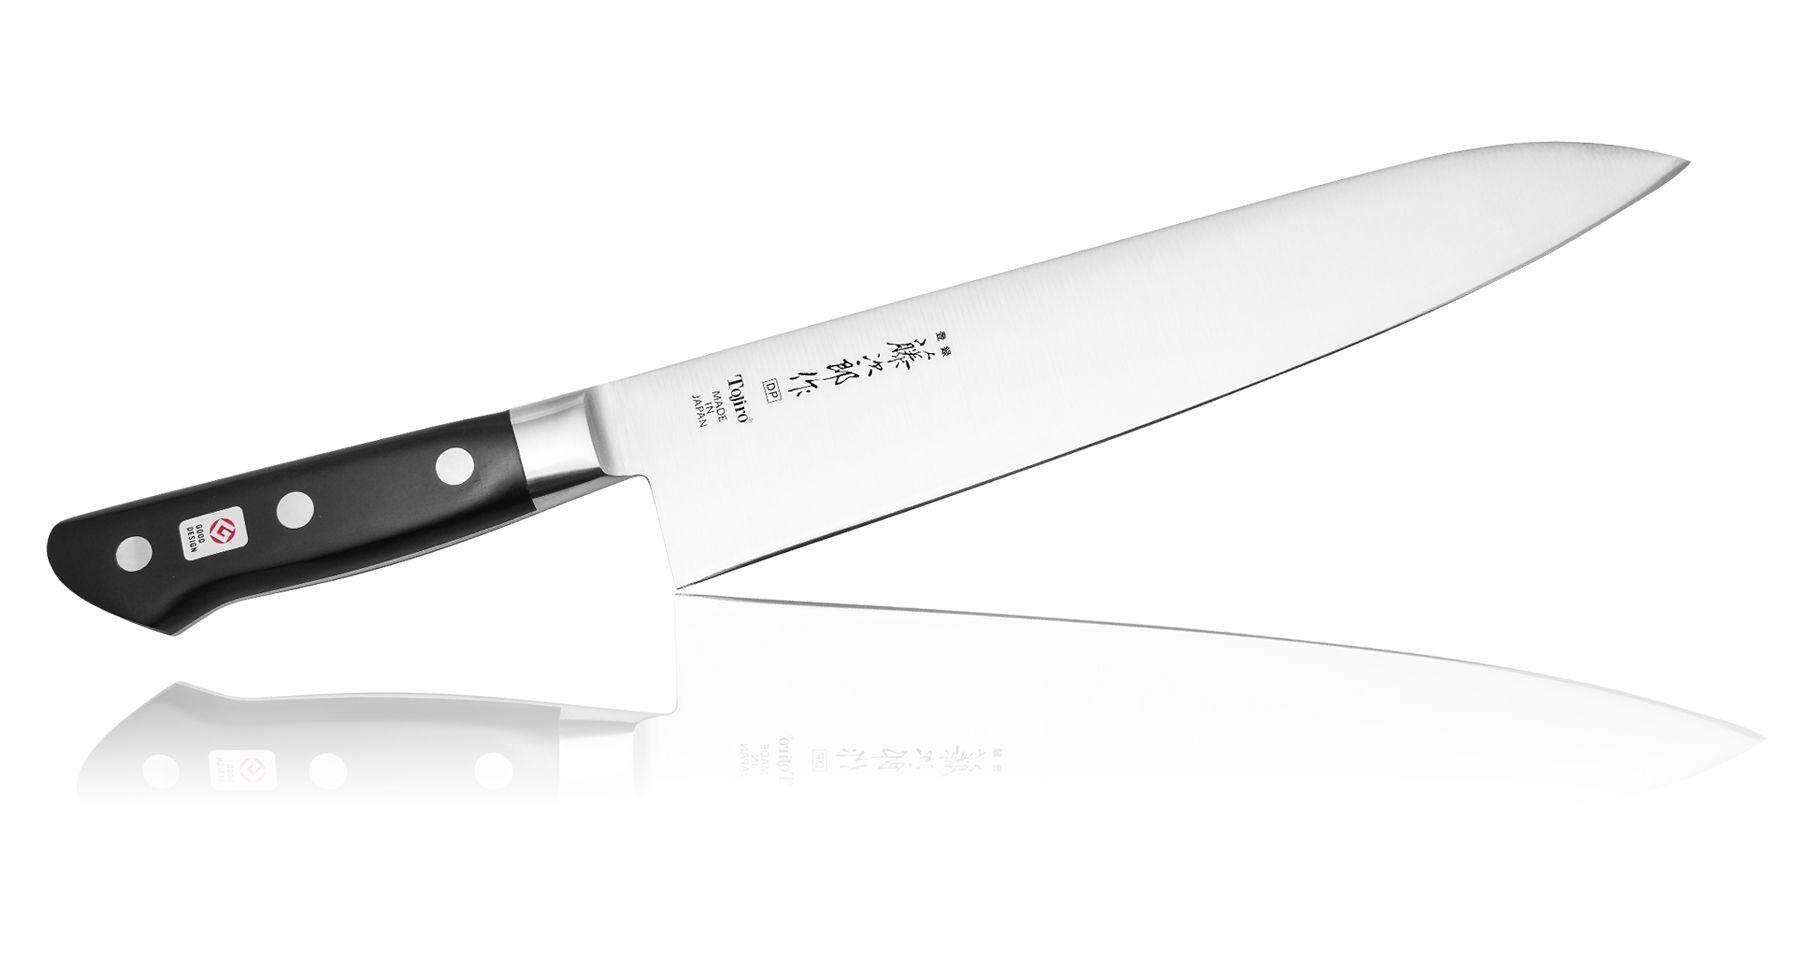 Coltello giapponese Chef Tojiro Western 180 mm (F-807)